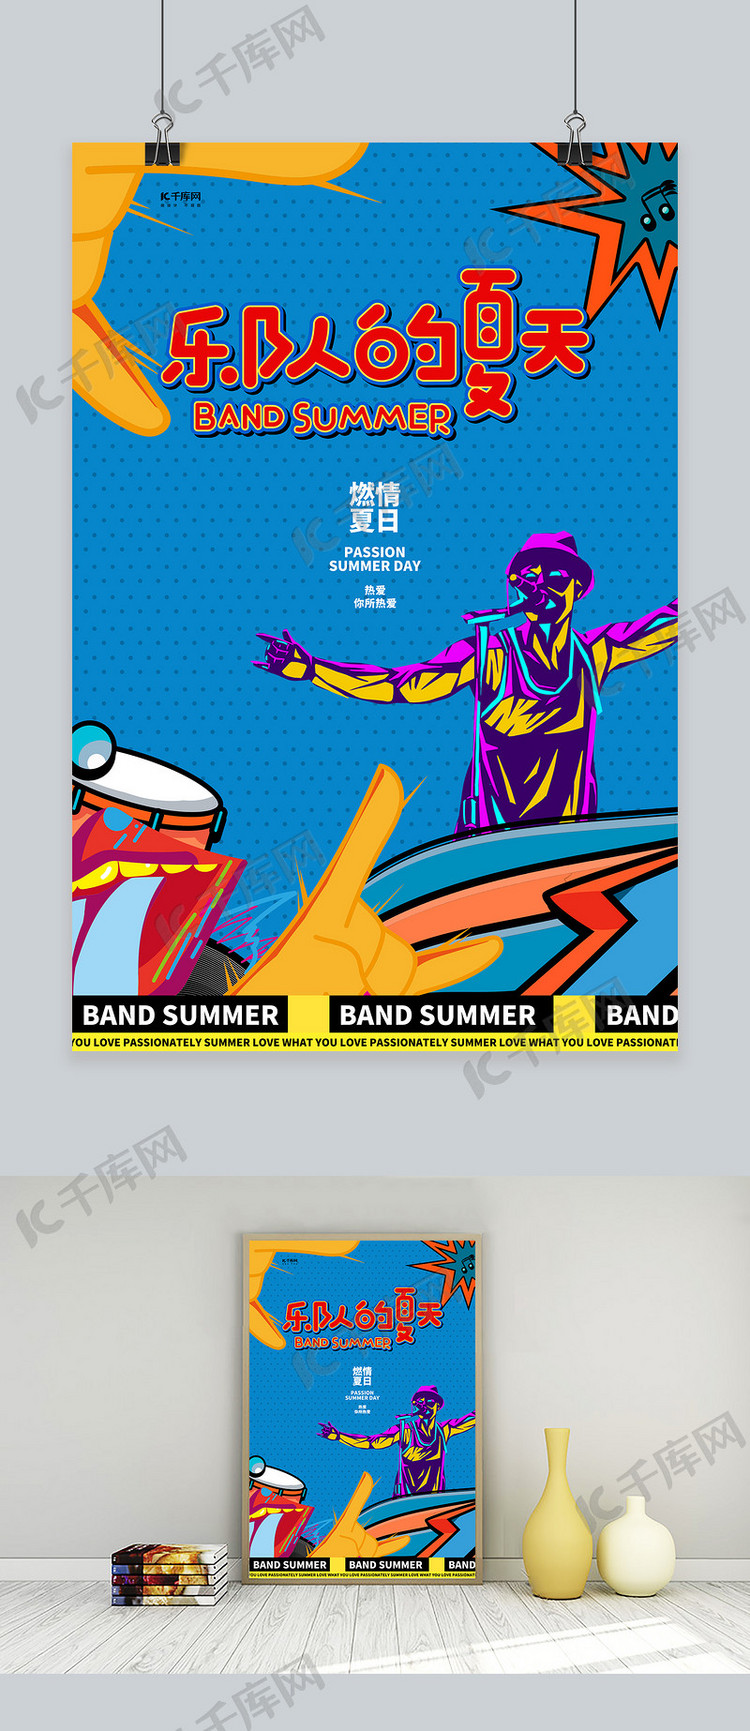 乐队的夏天乐器蓝色创意海报